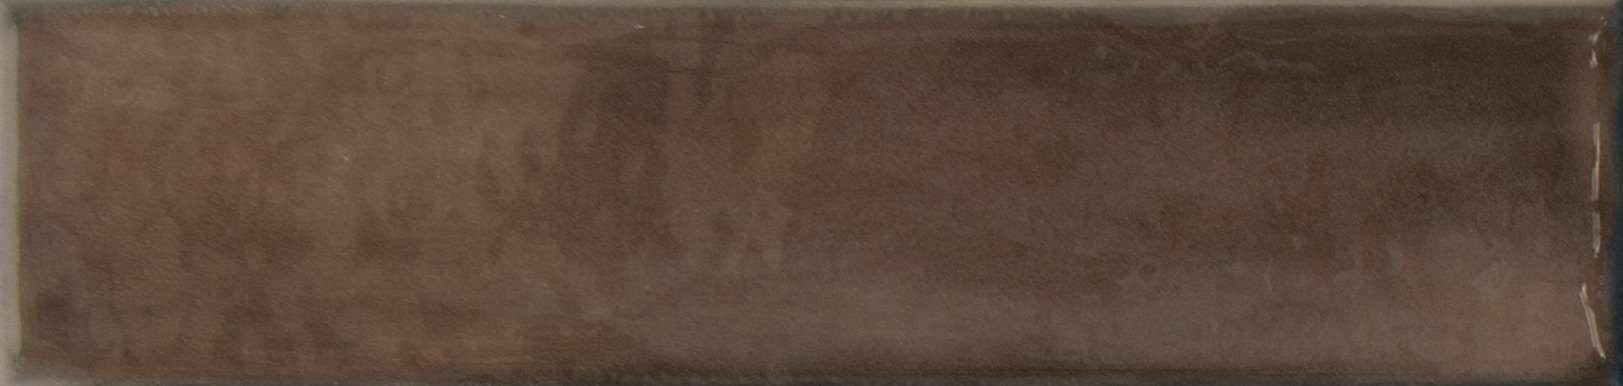 Керамическая плитка Self Style Cloud Moka, цвет коричневый, поверхность глянцевая, под кирпич, 75x300